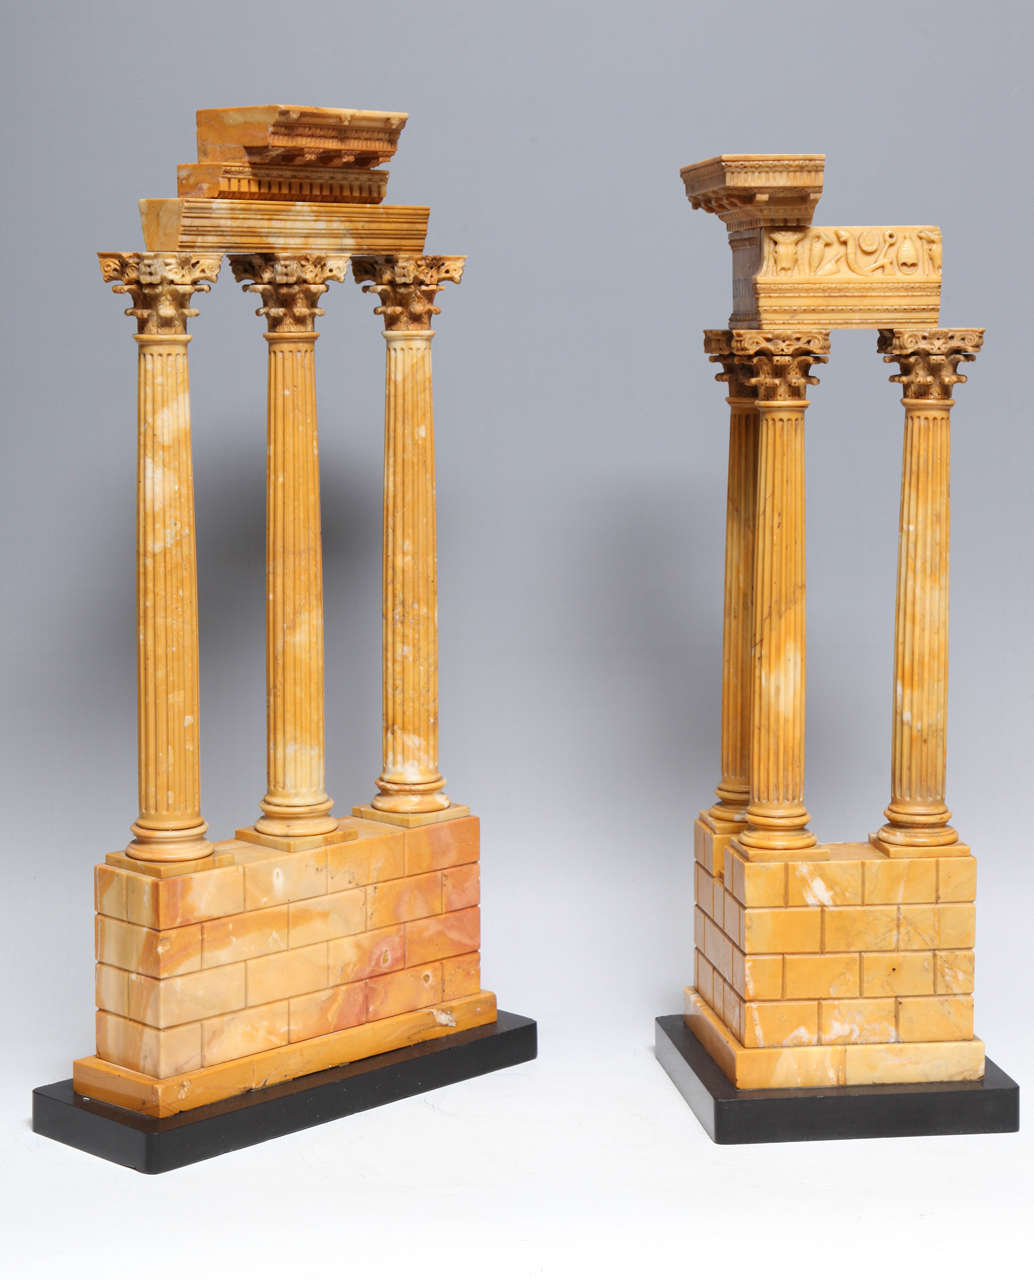 Ein sehr schönes und frühes Paar von römischen neoklassischen Zeit Grand Tour Sienna Marmor Modelle des Tempels von Castor und Pollux und der Tempel des Vespasian, frühen 1800er, Italienisch.

Im 18. und 19. Jahrhundert galt die Ausbildung eines